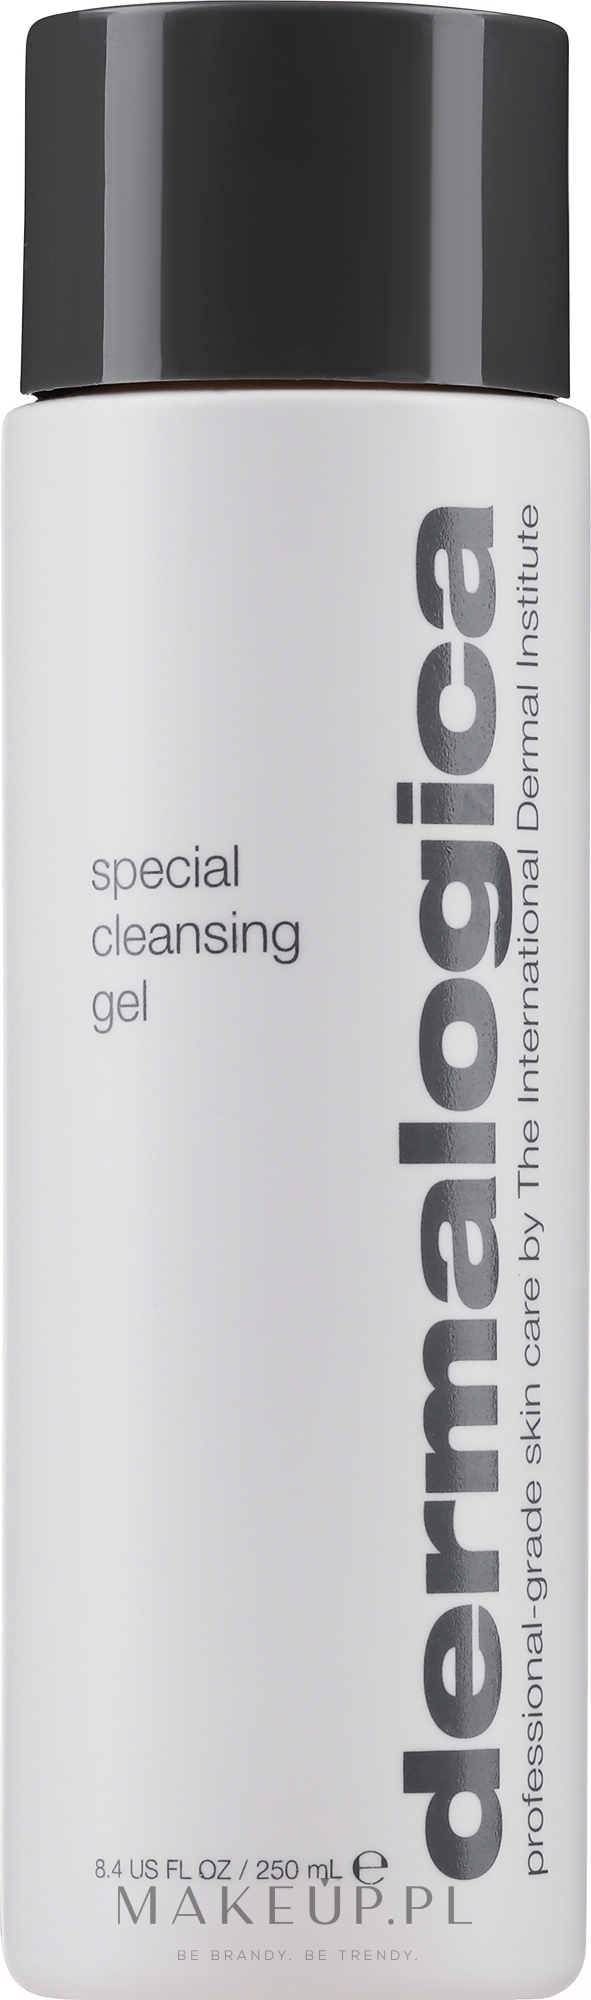 Delikatny pieniący się żel do mycia skóry - Dermalogica Daily Skin Health Special Cleansing Gel — Zdjęcie 250 ml